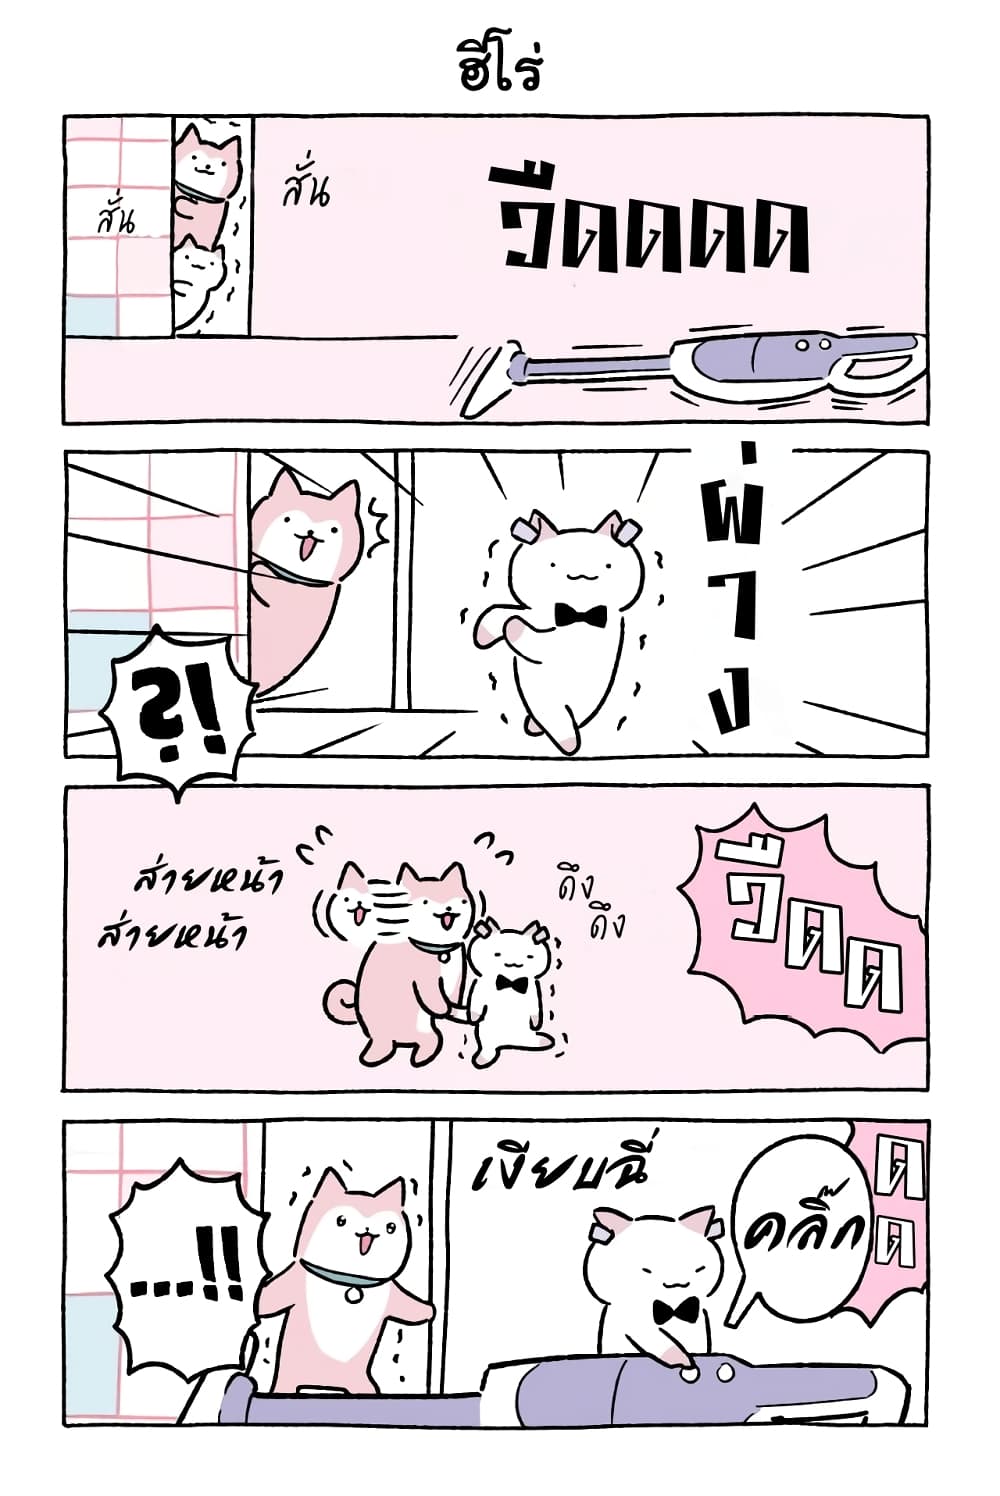 Wonder Cat Kyuu chan คิวจัง แมวมหัศจรรย์ ตอนที่ 45 (8)